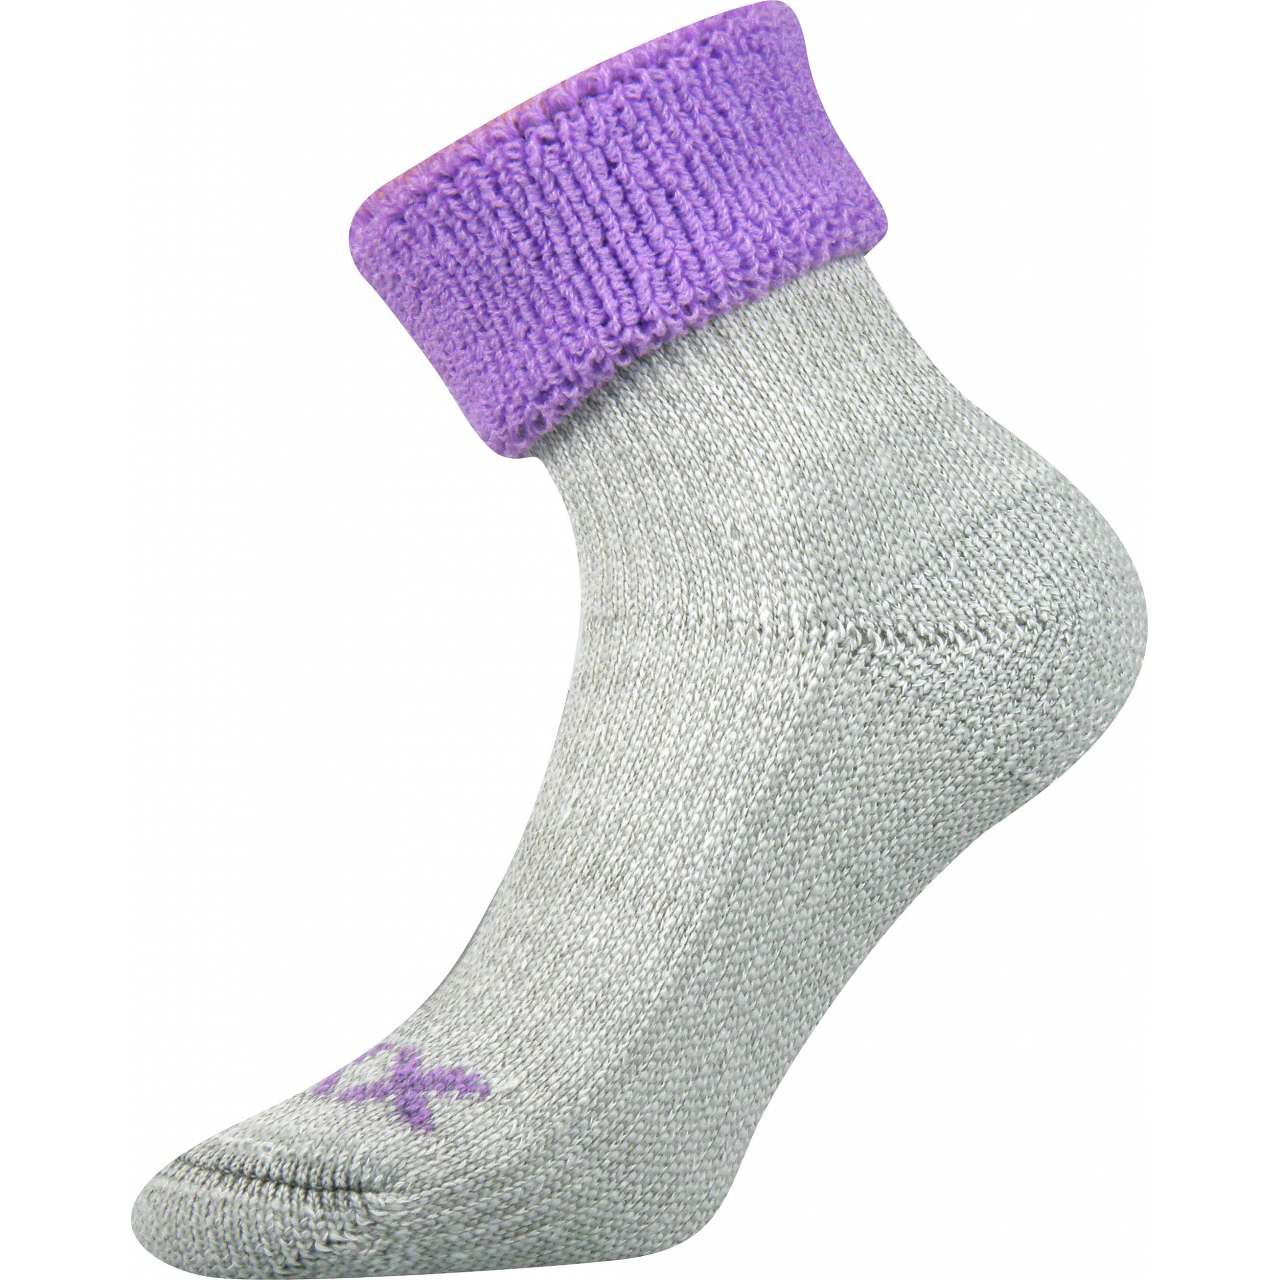 Ponožky dámské termo Voxx Quanta - šedé-fialové, 35-38